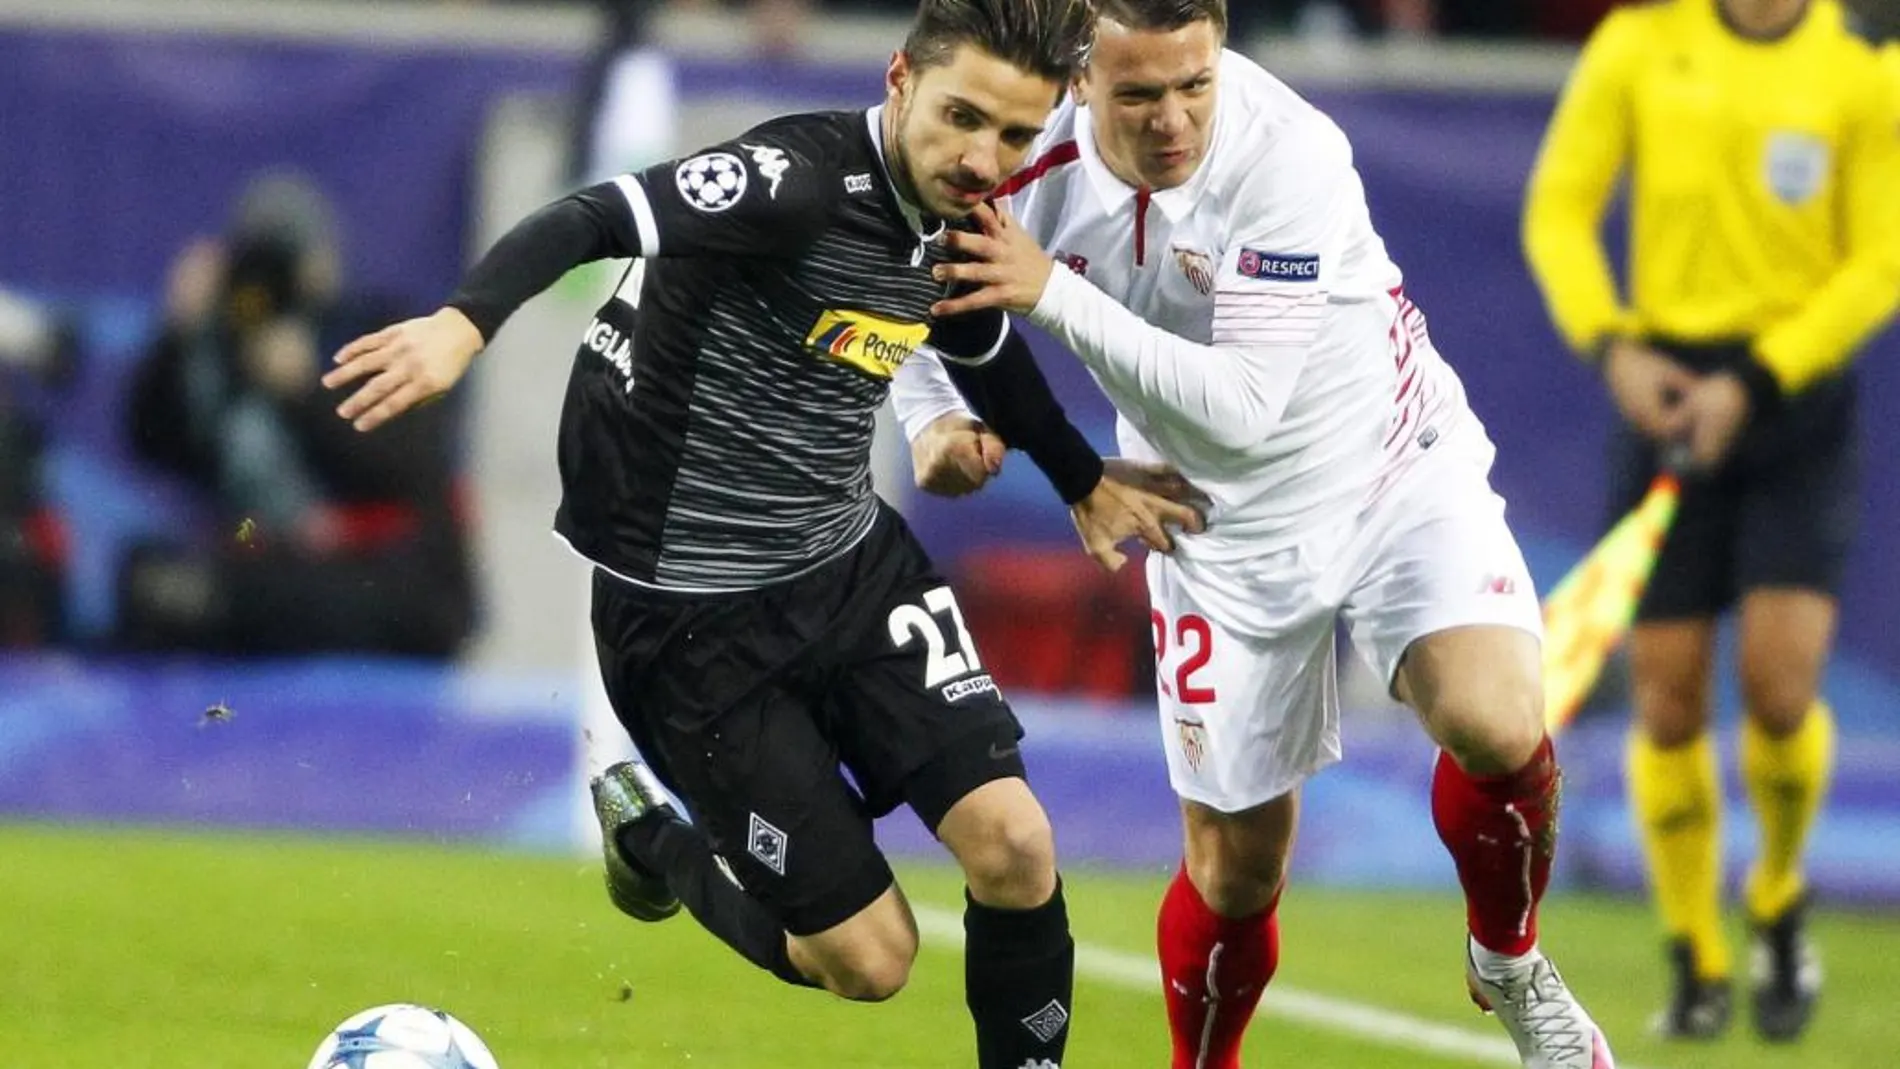 El centrocampista ucraniano del Sevilla, Evgeni Konoplyanka lucha por el balón con Julian Korb (i) del Borussia Mönchengladbach